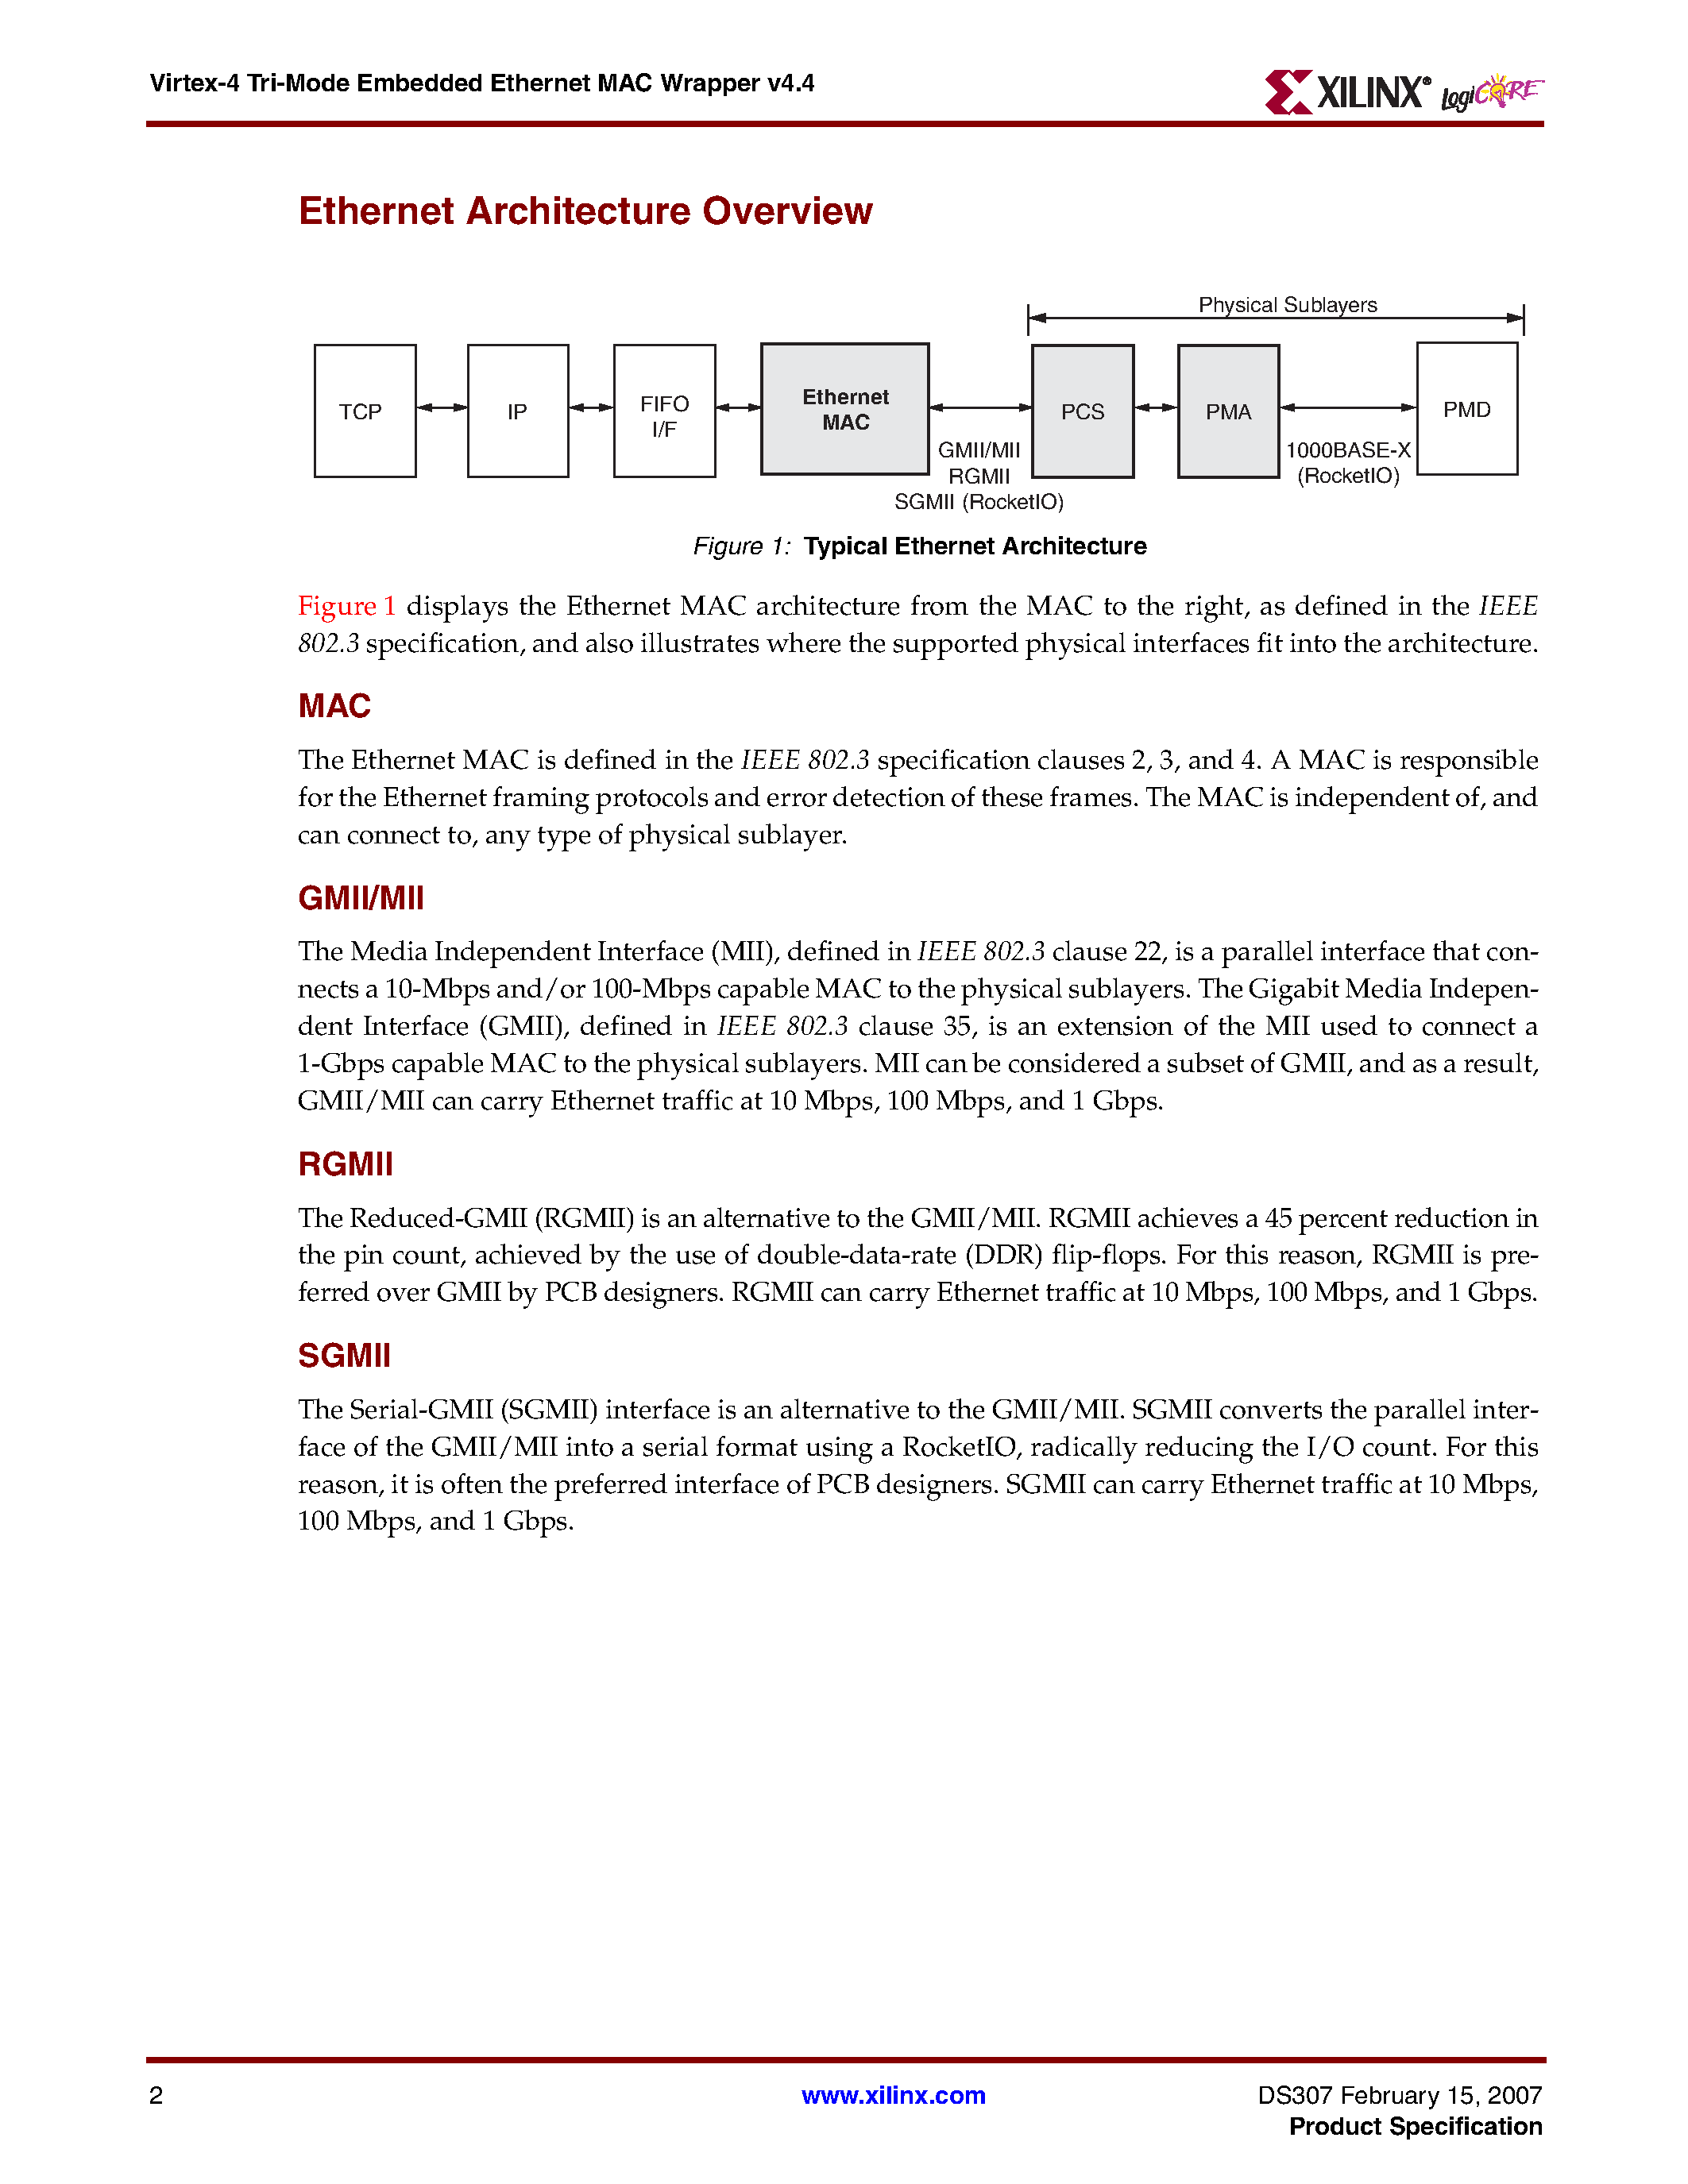 Даташит VIRTEX-4 - Tri-Mode Embedded Ethernet MAC Wrapper v4.4 страница 2